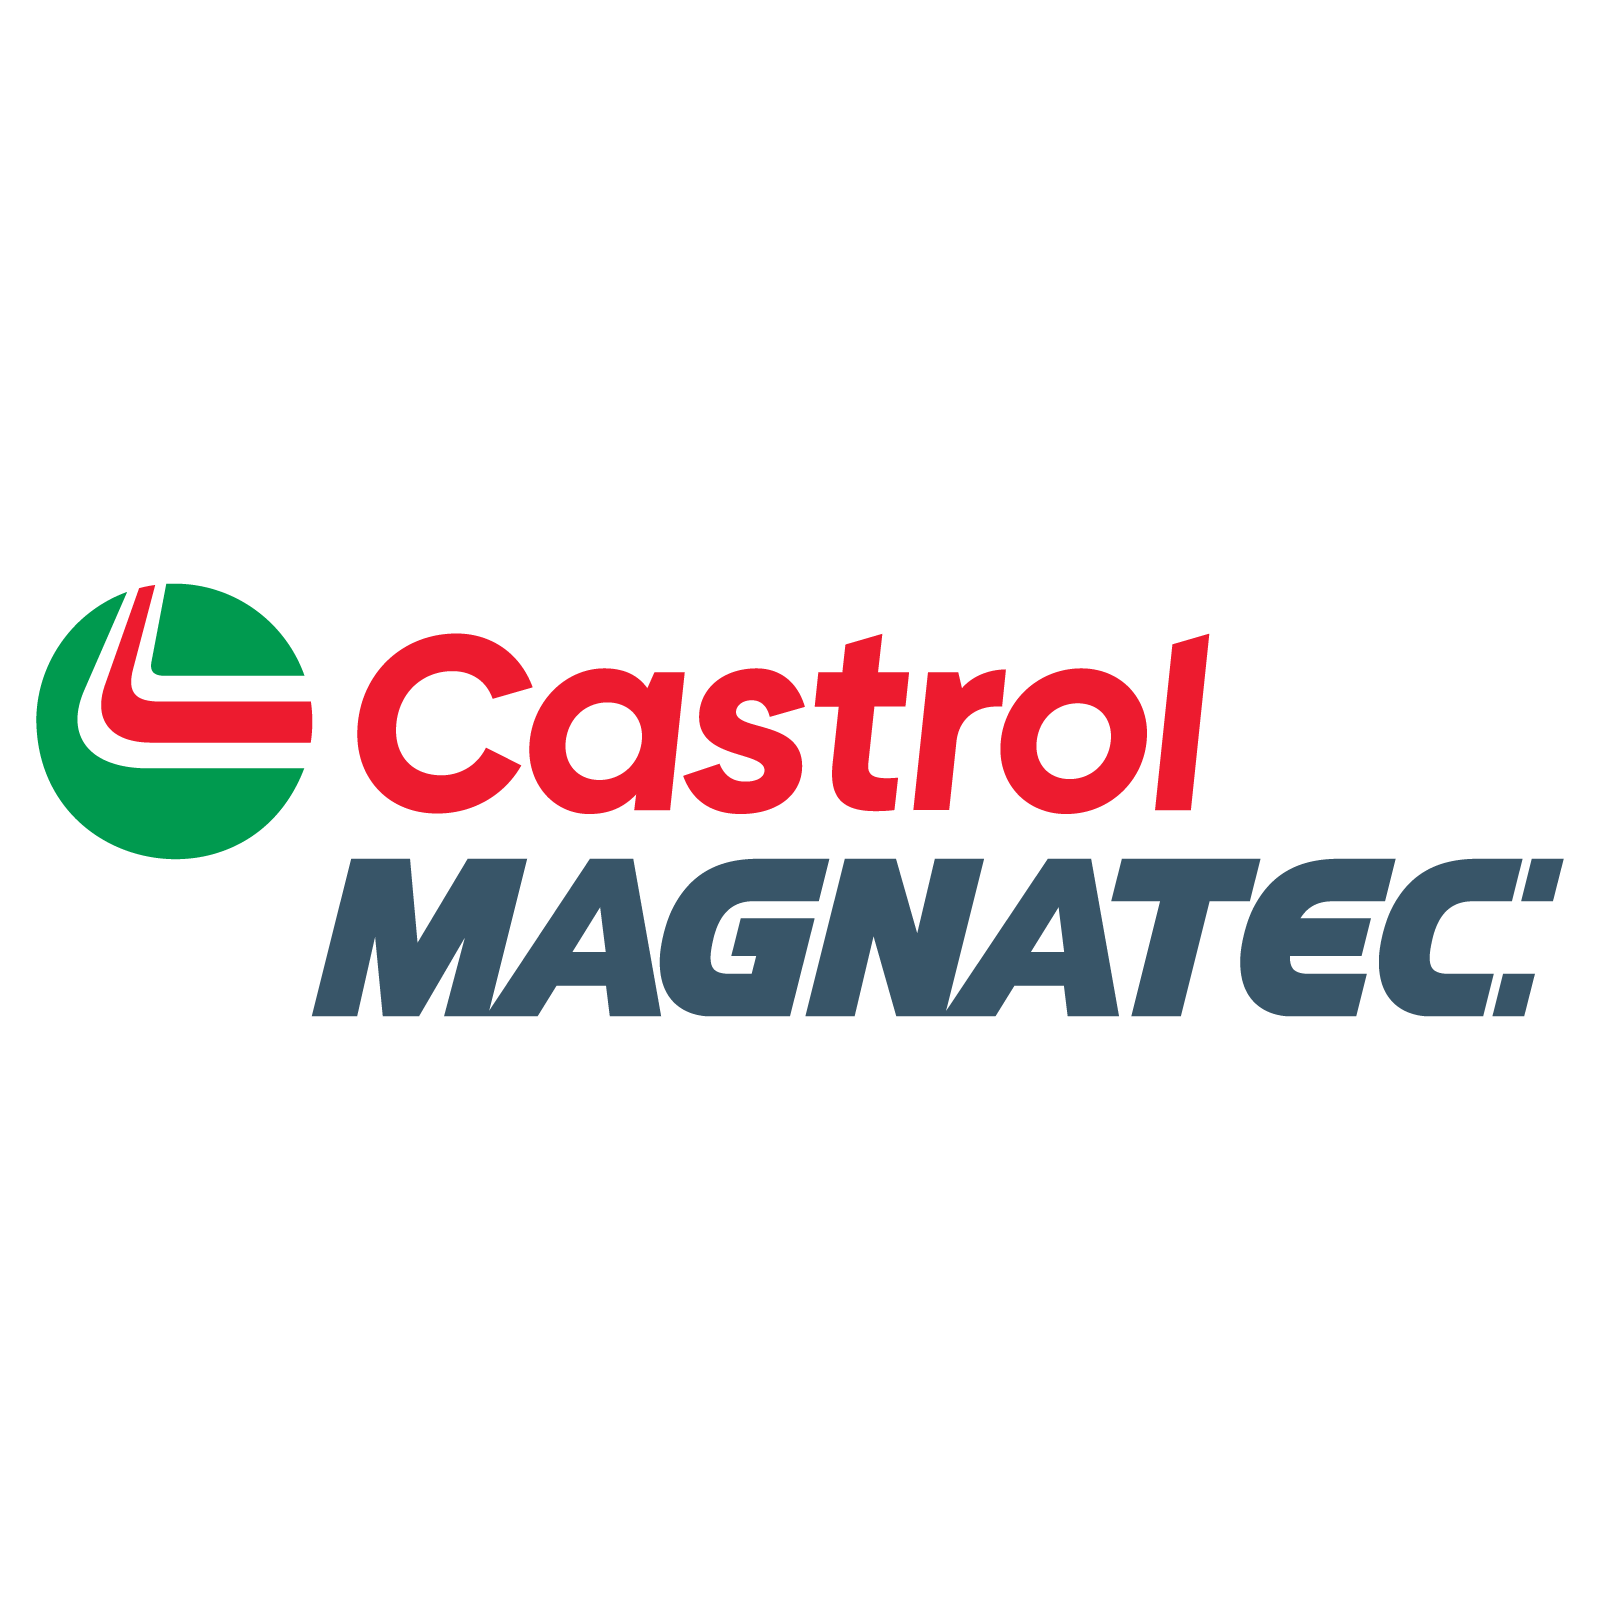 Castrol MAGNATEC Brand Logo